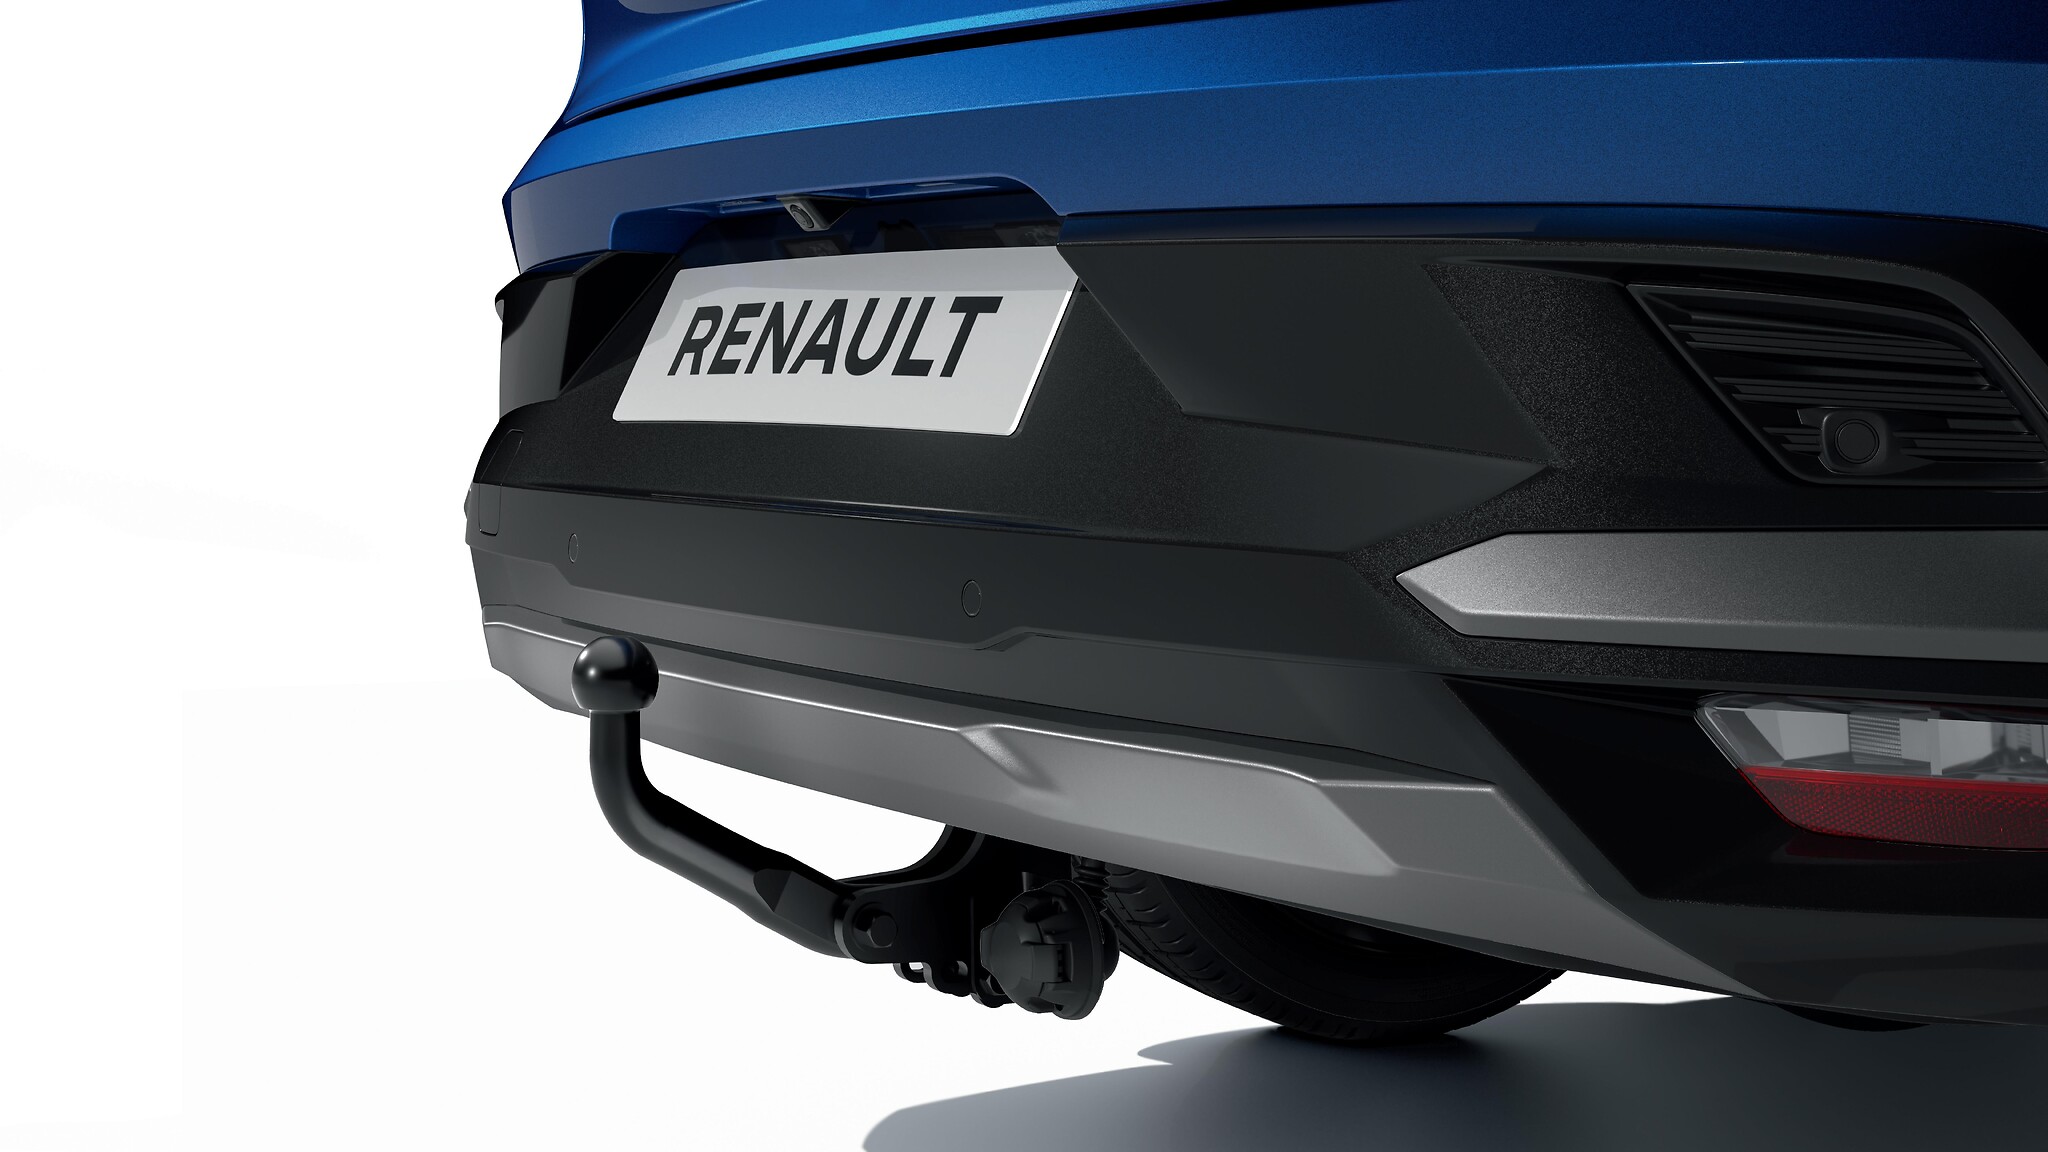  è un componente originale Renault totalmente compatibile con il veicolo.